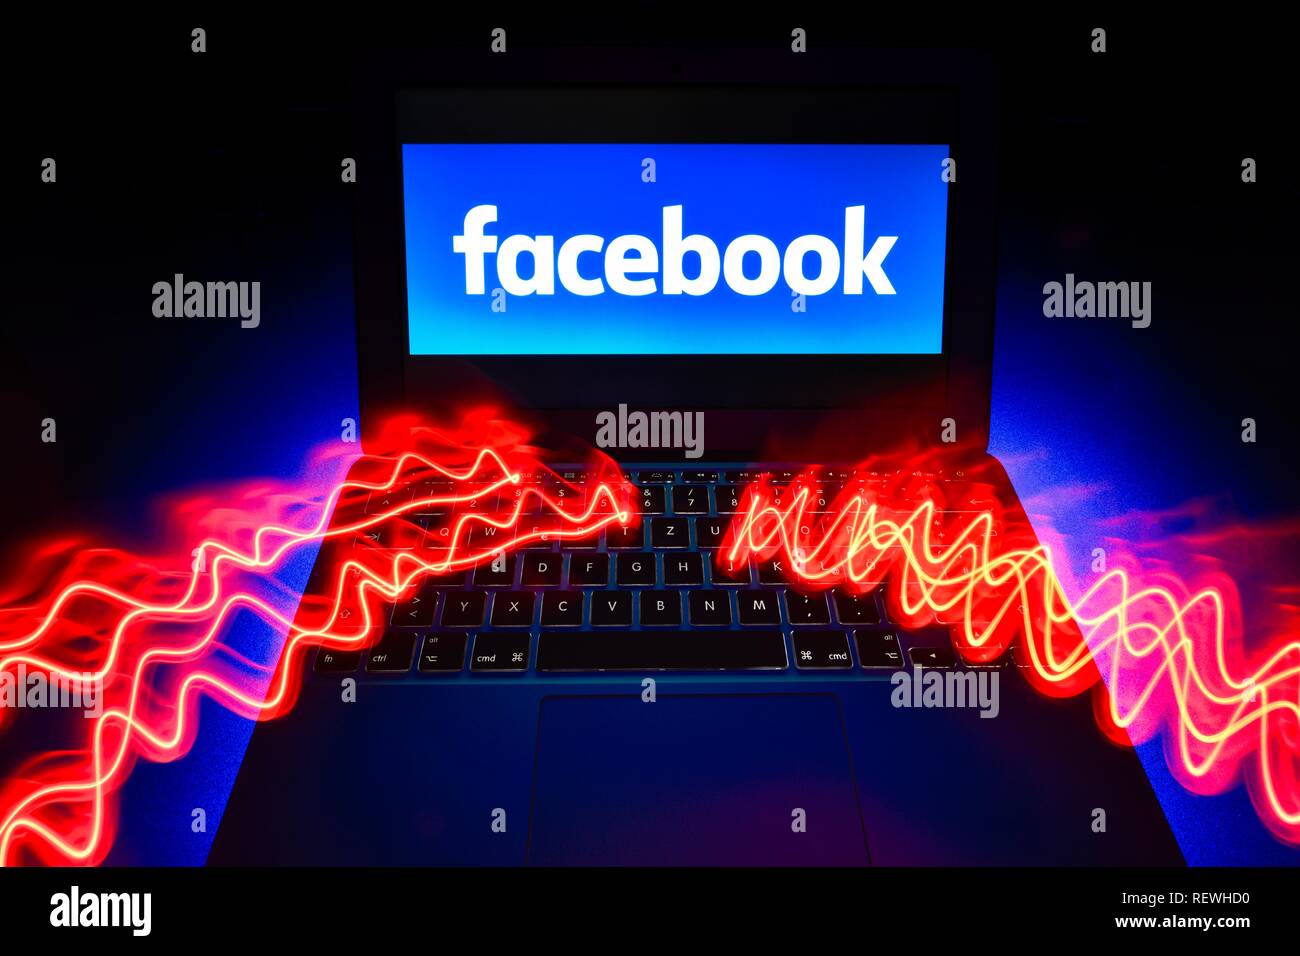 Image symbole Facebook La cybercriminalité, la criminalité informatique, la protection des données, de l'Allemagne Banque D'Images